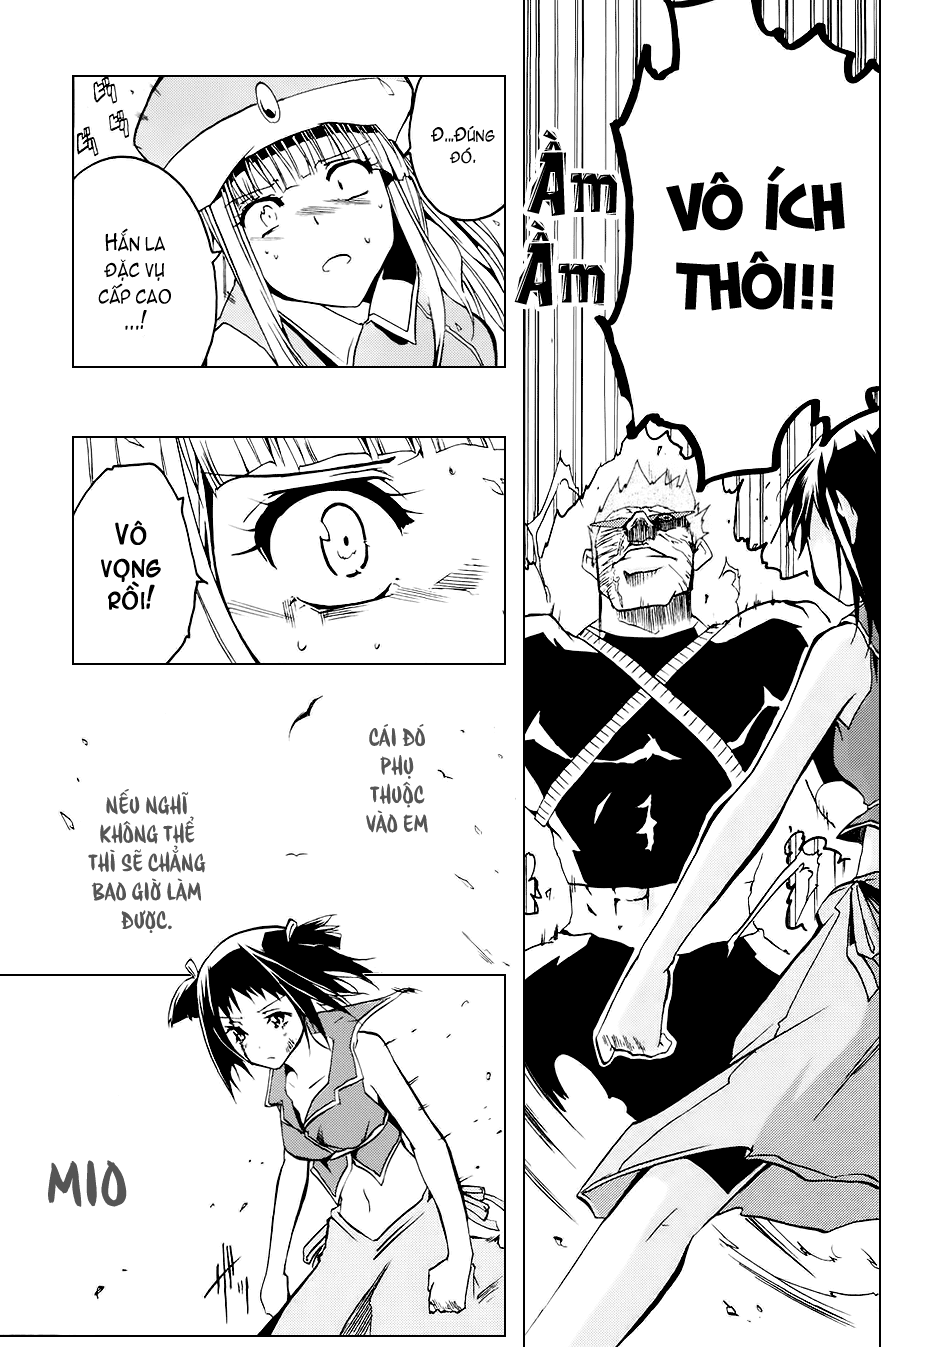 [Manga]: Esprit ESPRIT_01_069